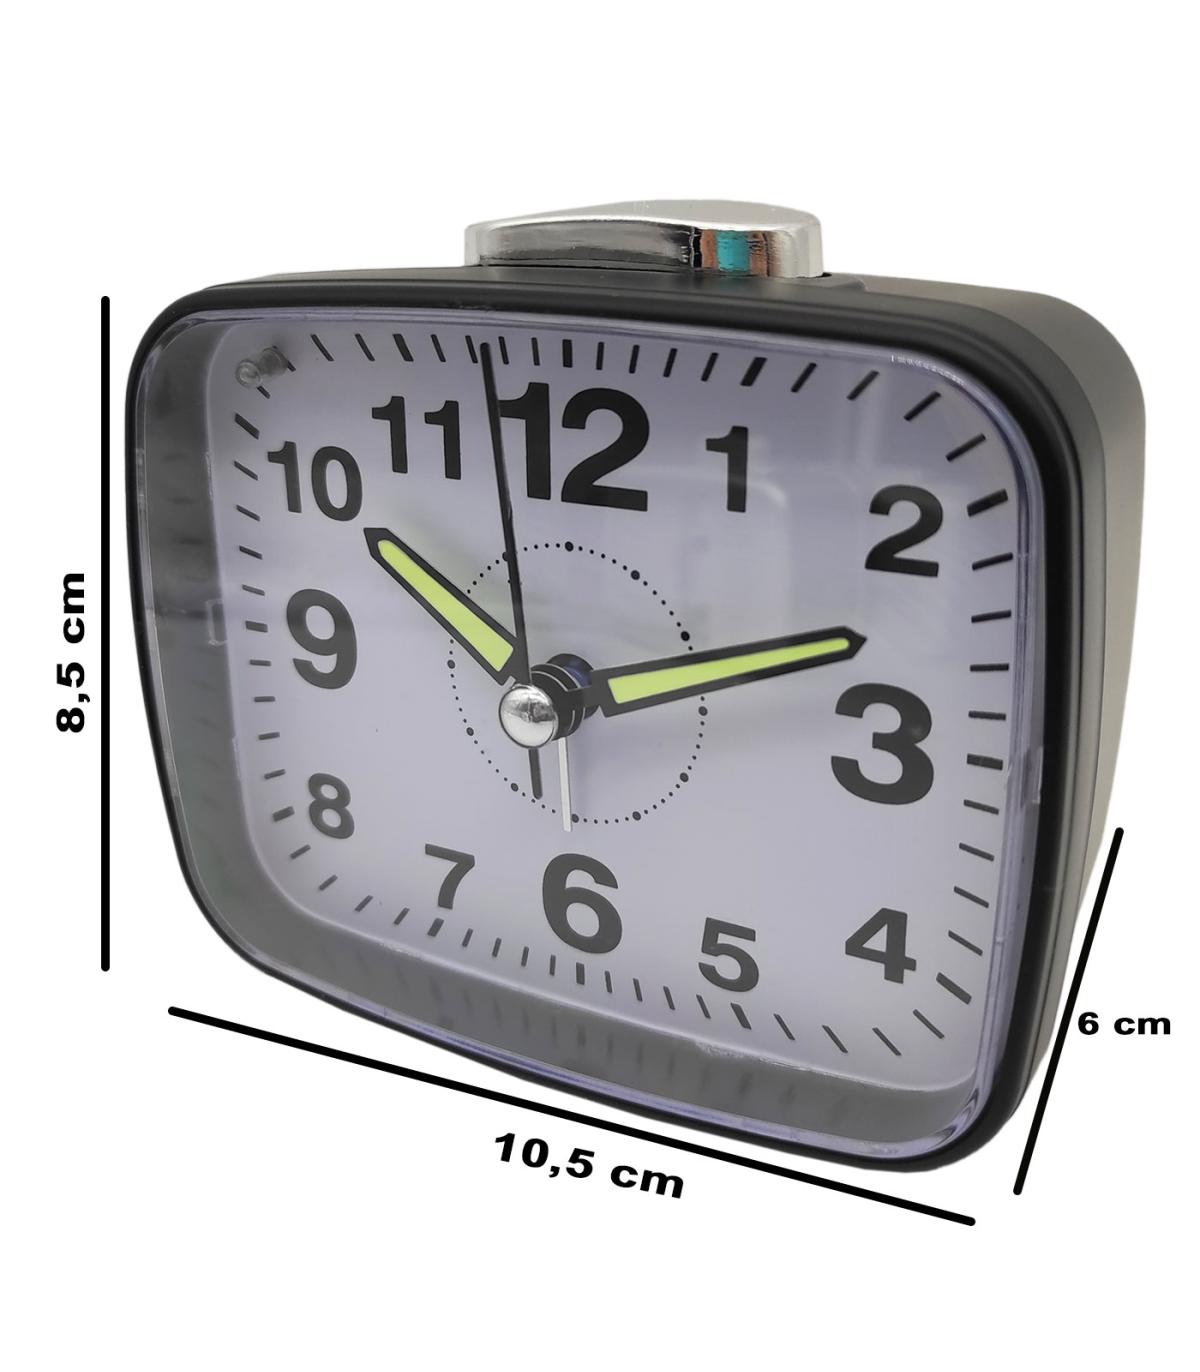 Tradineur - Reloj despertador analógico de plástico, silencioso, alarma  programable, botón de apagado, funcionamiento con 2 pila